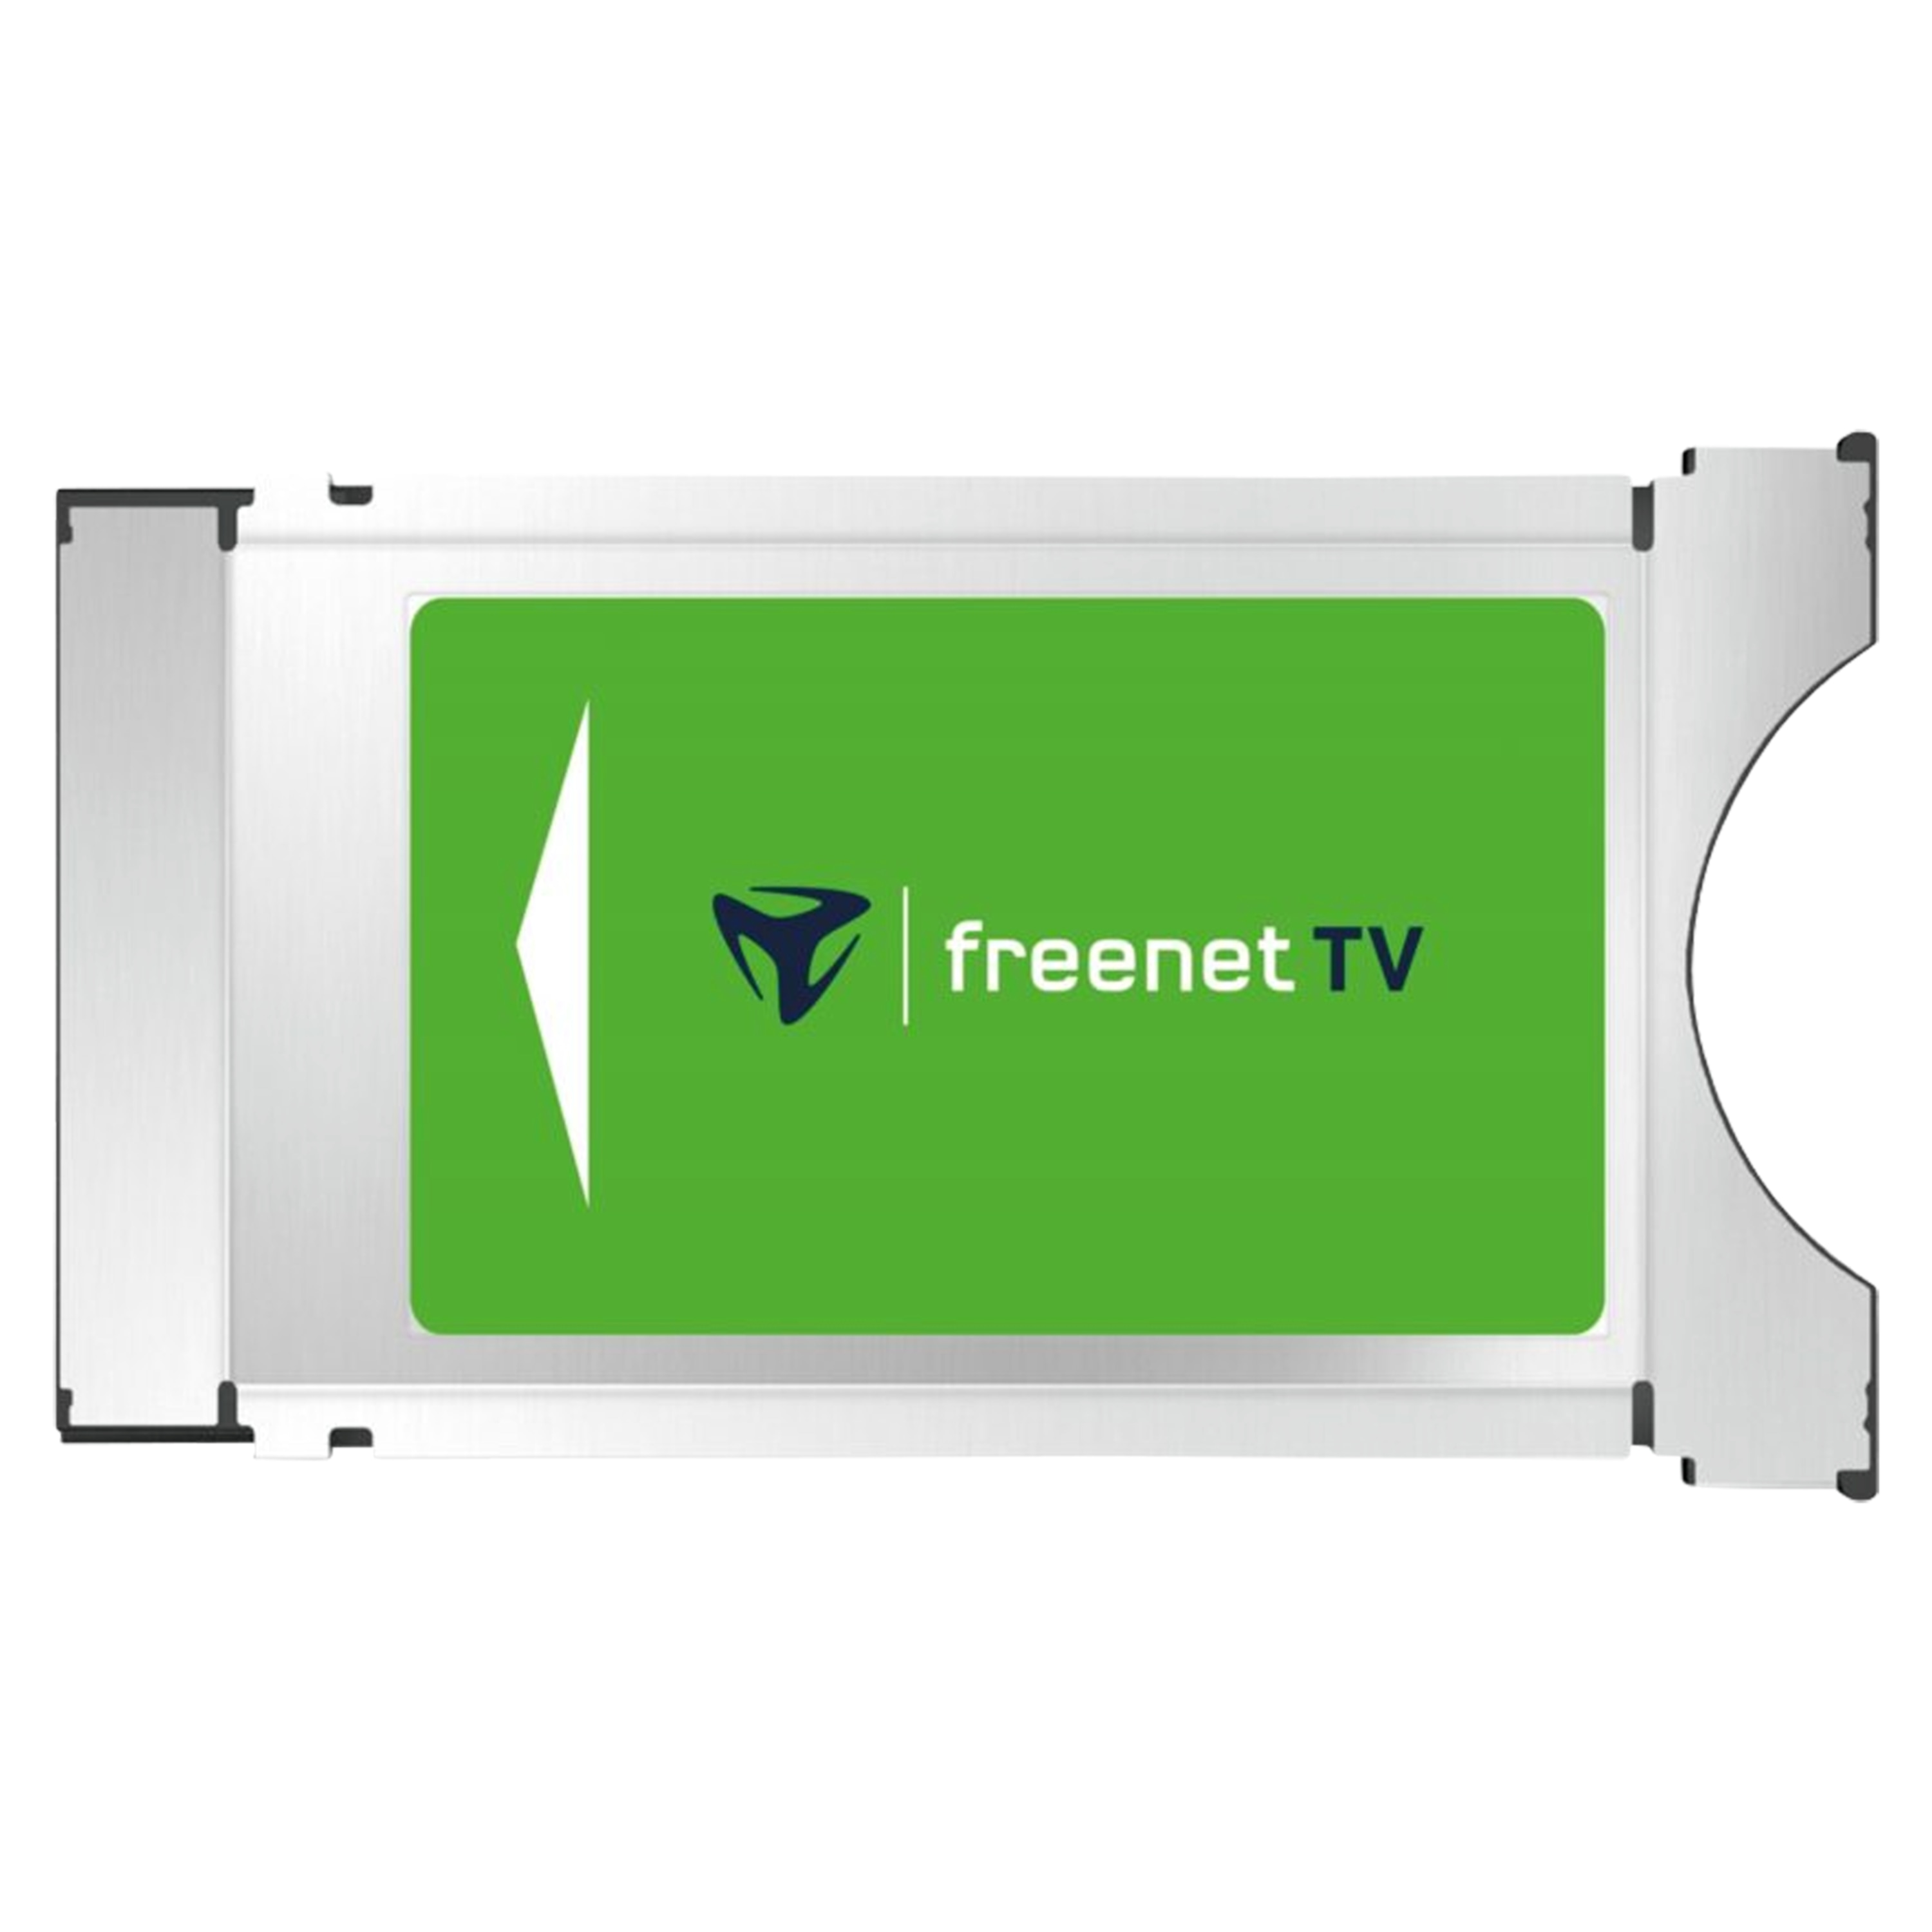 TELESTAR freenet TV CI+ Modul, für DVB-T2 HD und 4K/UHD geeignete Geräte, ermöglicht den Empfang via DVB-T2 HD ausgestrahlter verschlüsselter TV-Programme im Rahmen des freenet TV Angebotes, inkl. 12 Monate freenet TV